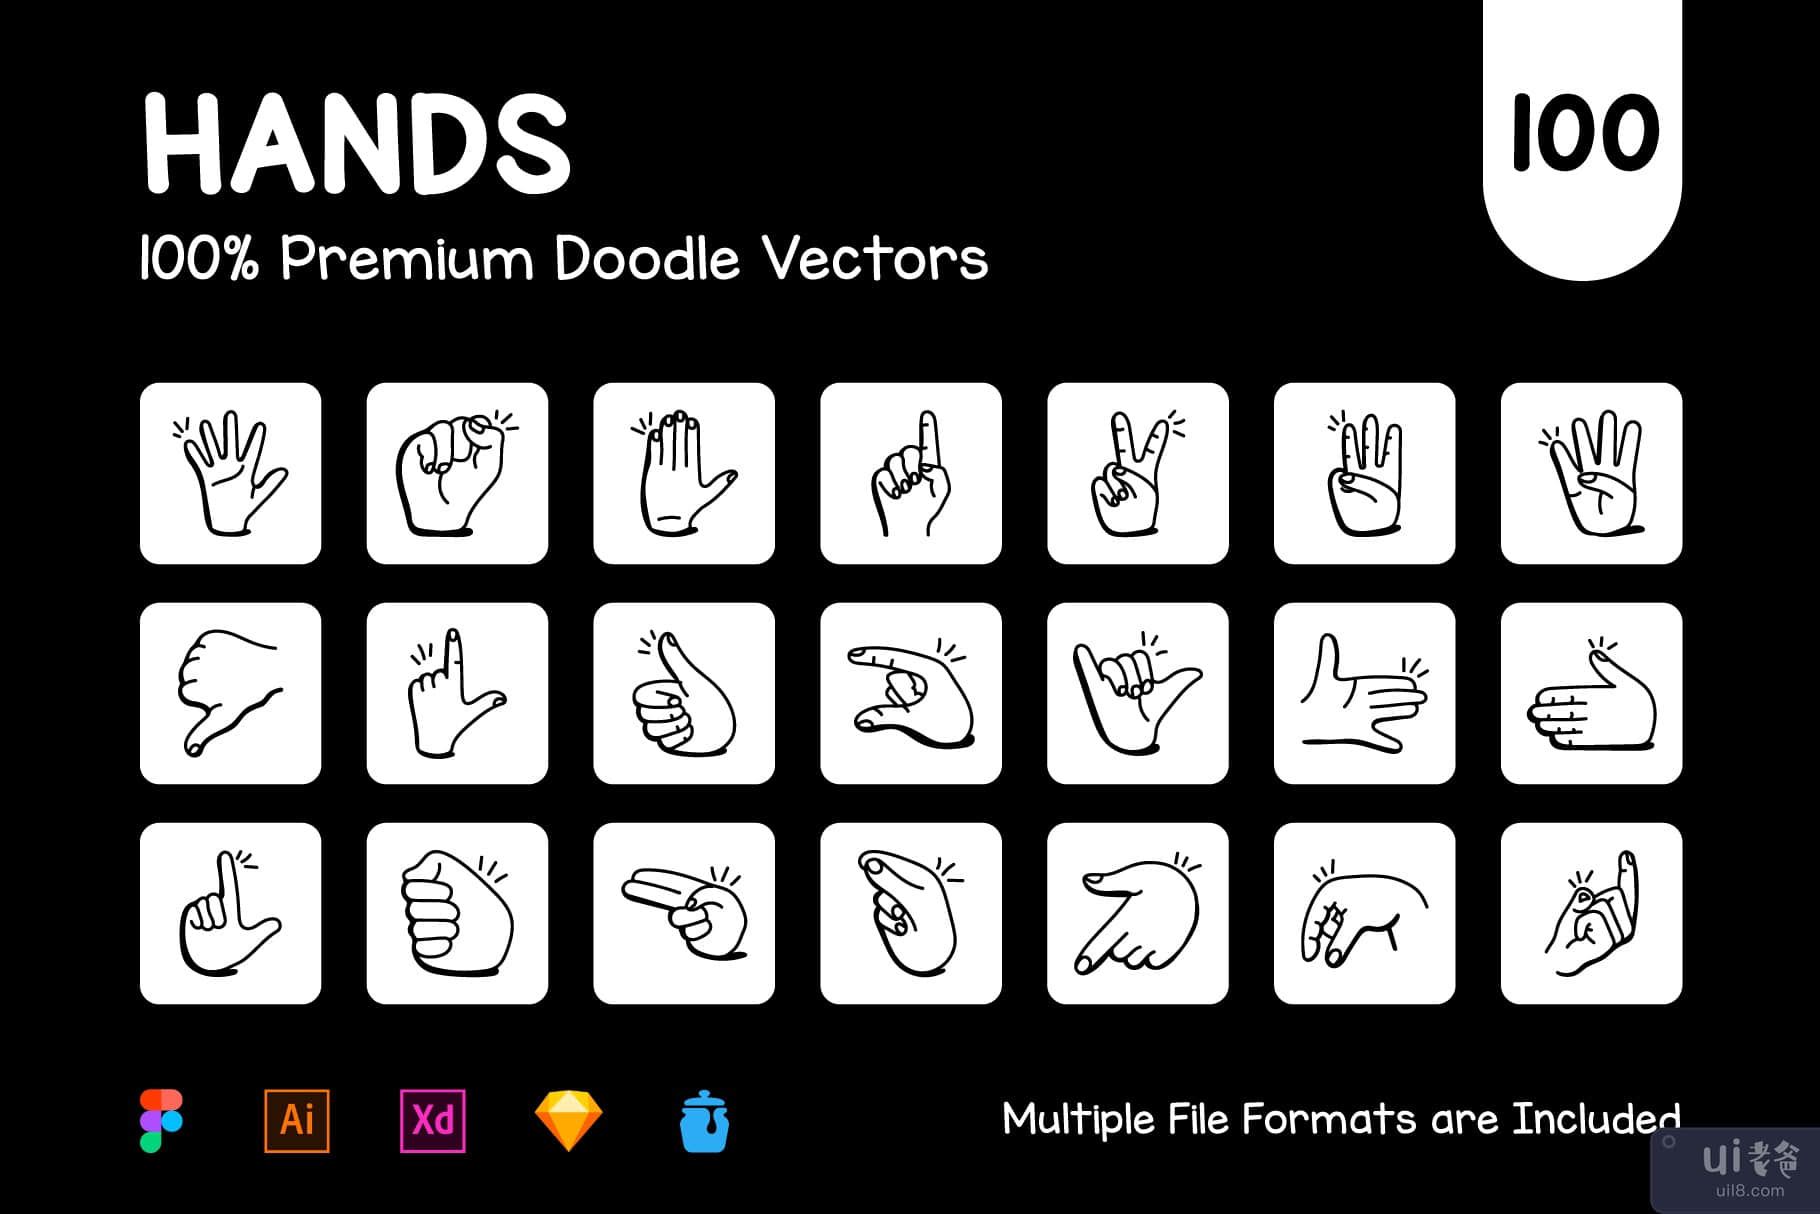 涂鸦手语图标的集合(Collection of Doodle Sign Language Icons)插图7